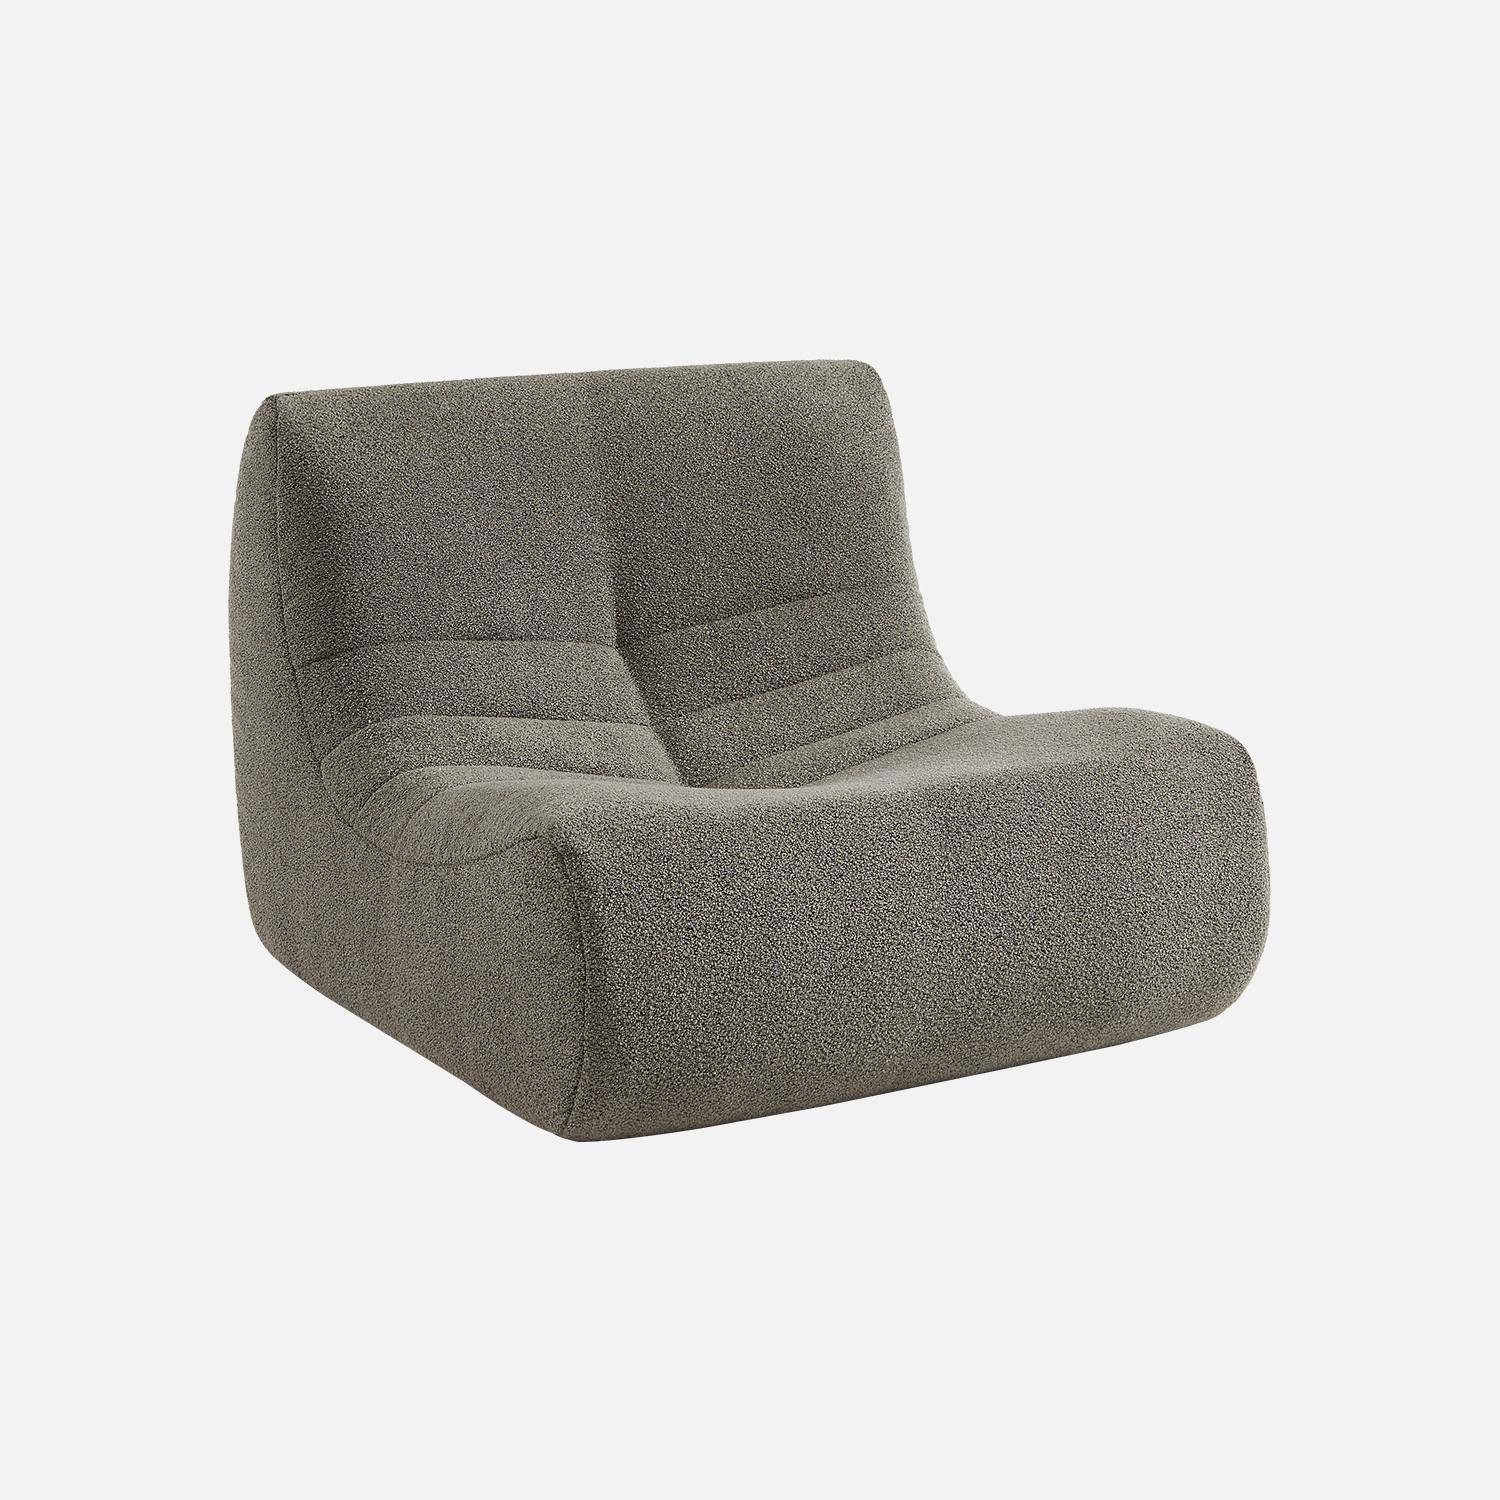 Fauteuil in grijze boucléstof, eigentijdse stijl, 1 zitplaats,sweeek,Photo3